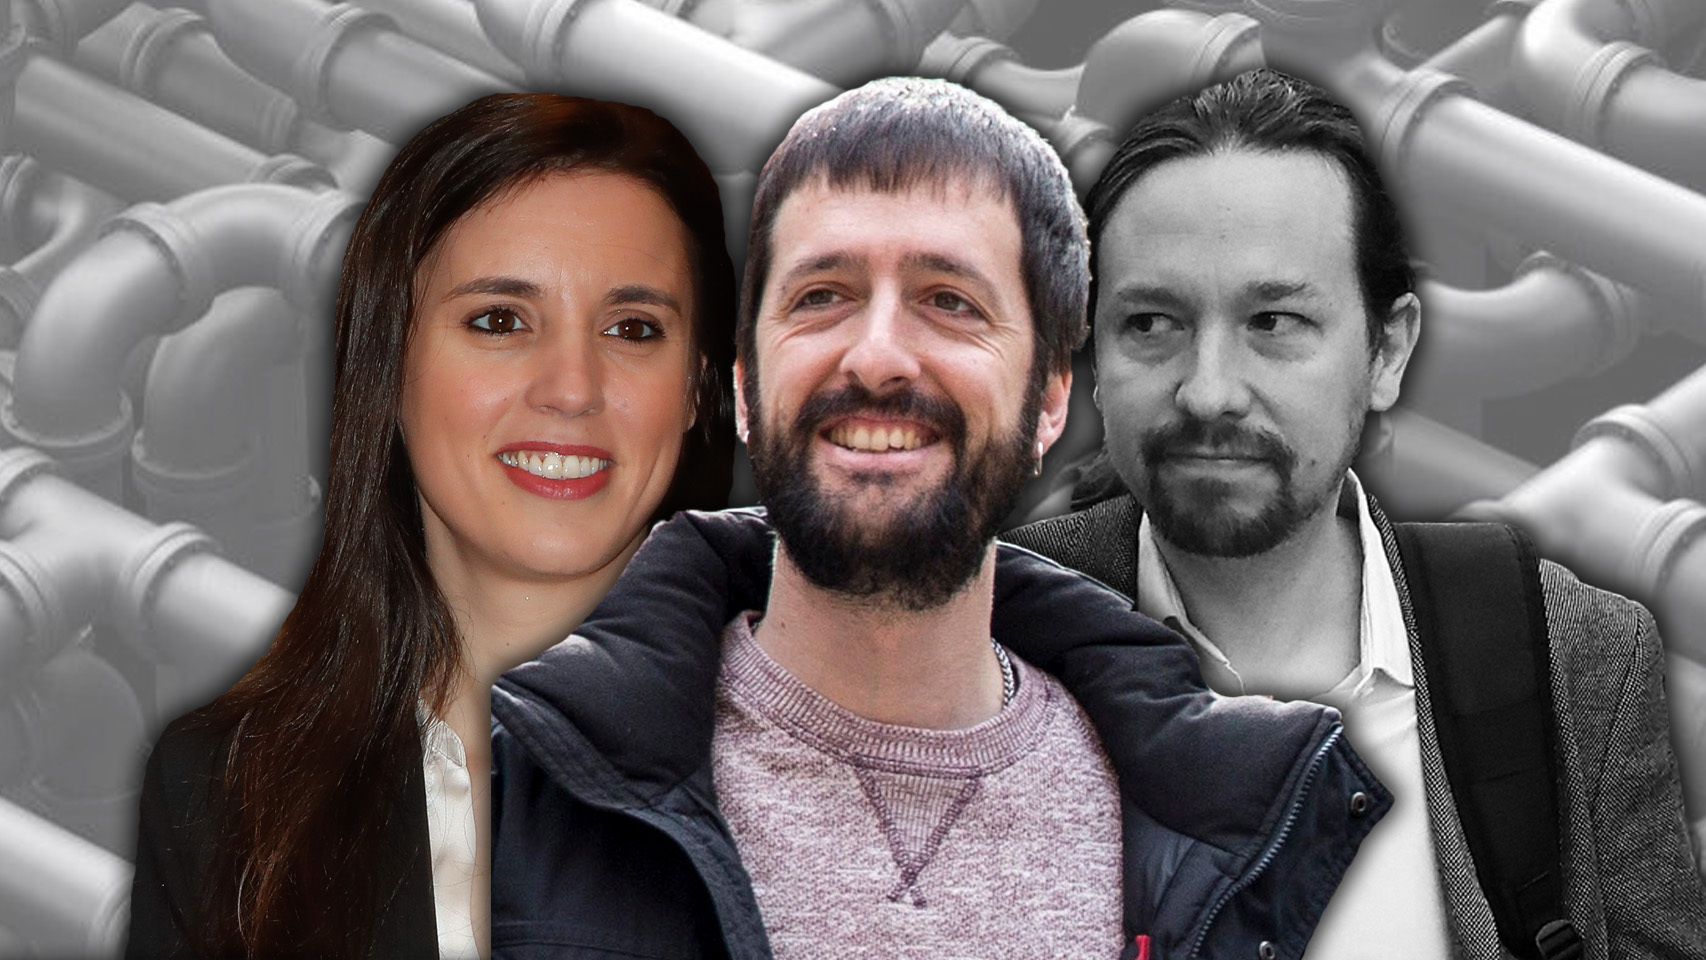 Unidas_Podemos-Podemos-Pablo_Iglesias-Irene_Montero-Corrupcion-Imputados-Espana_512960561_157707180_1706x960.jpg